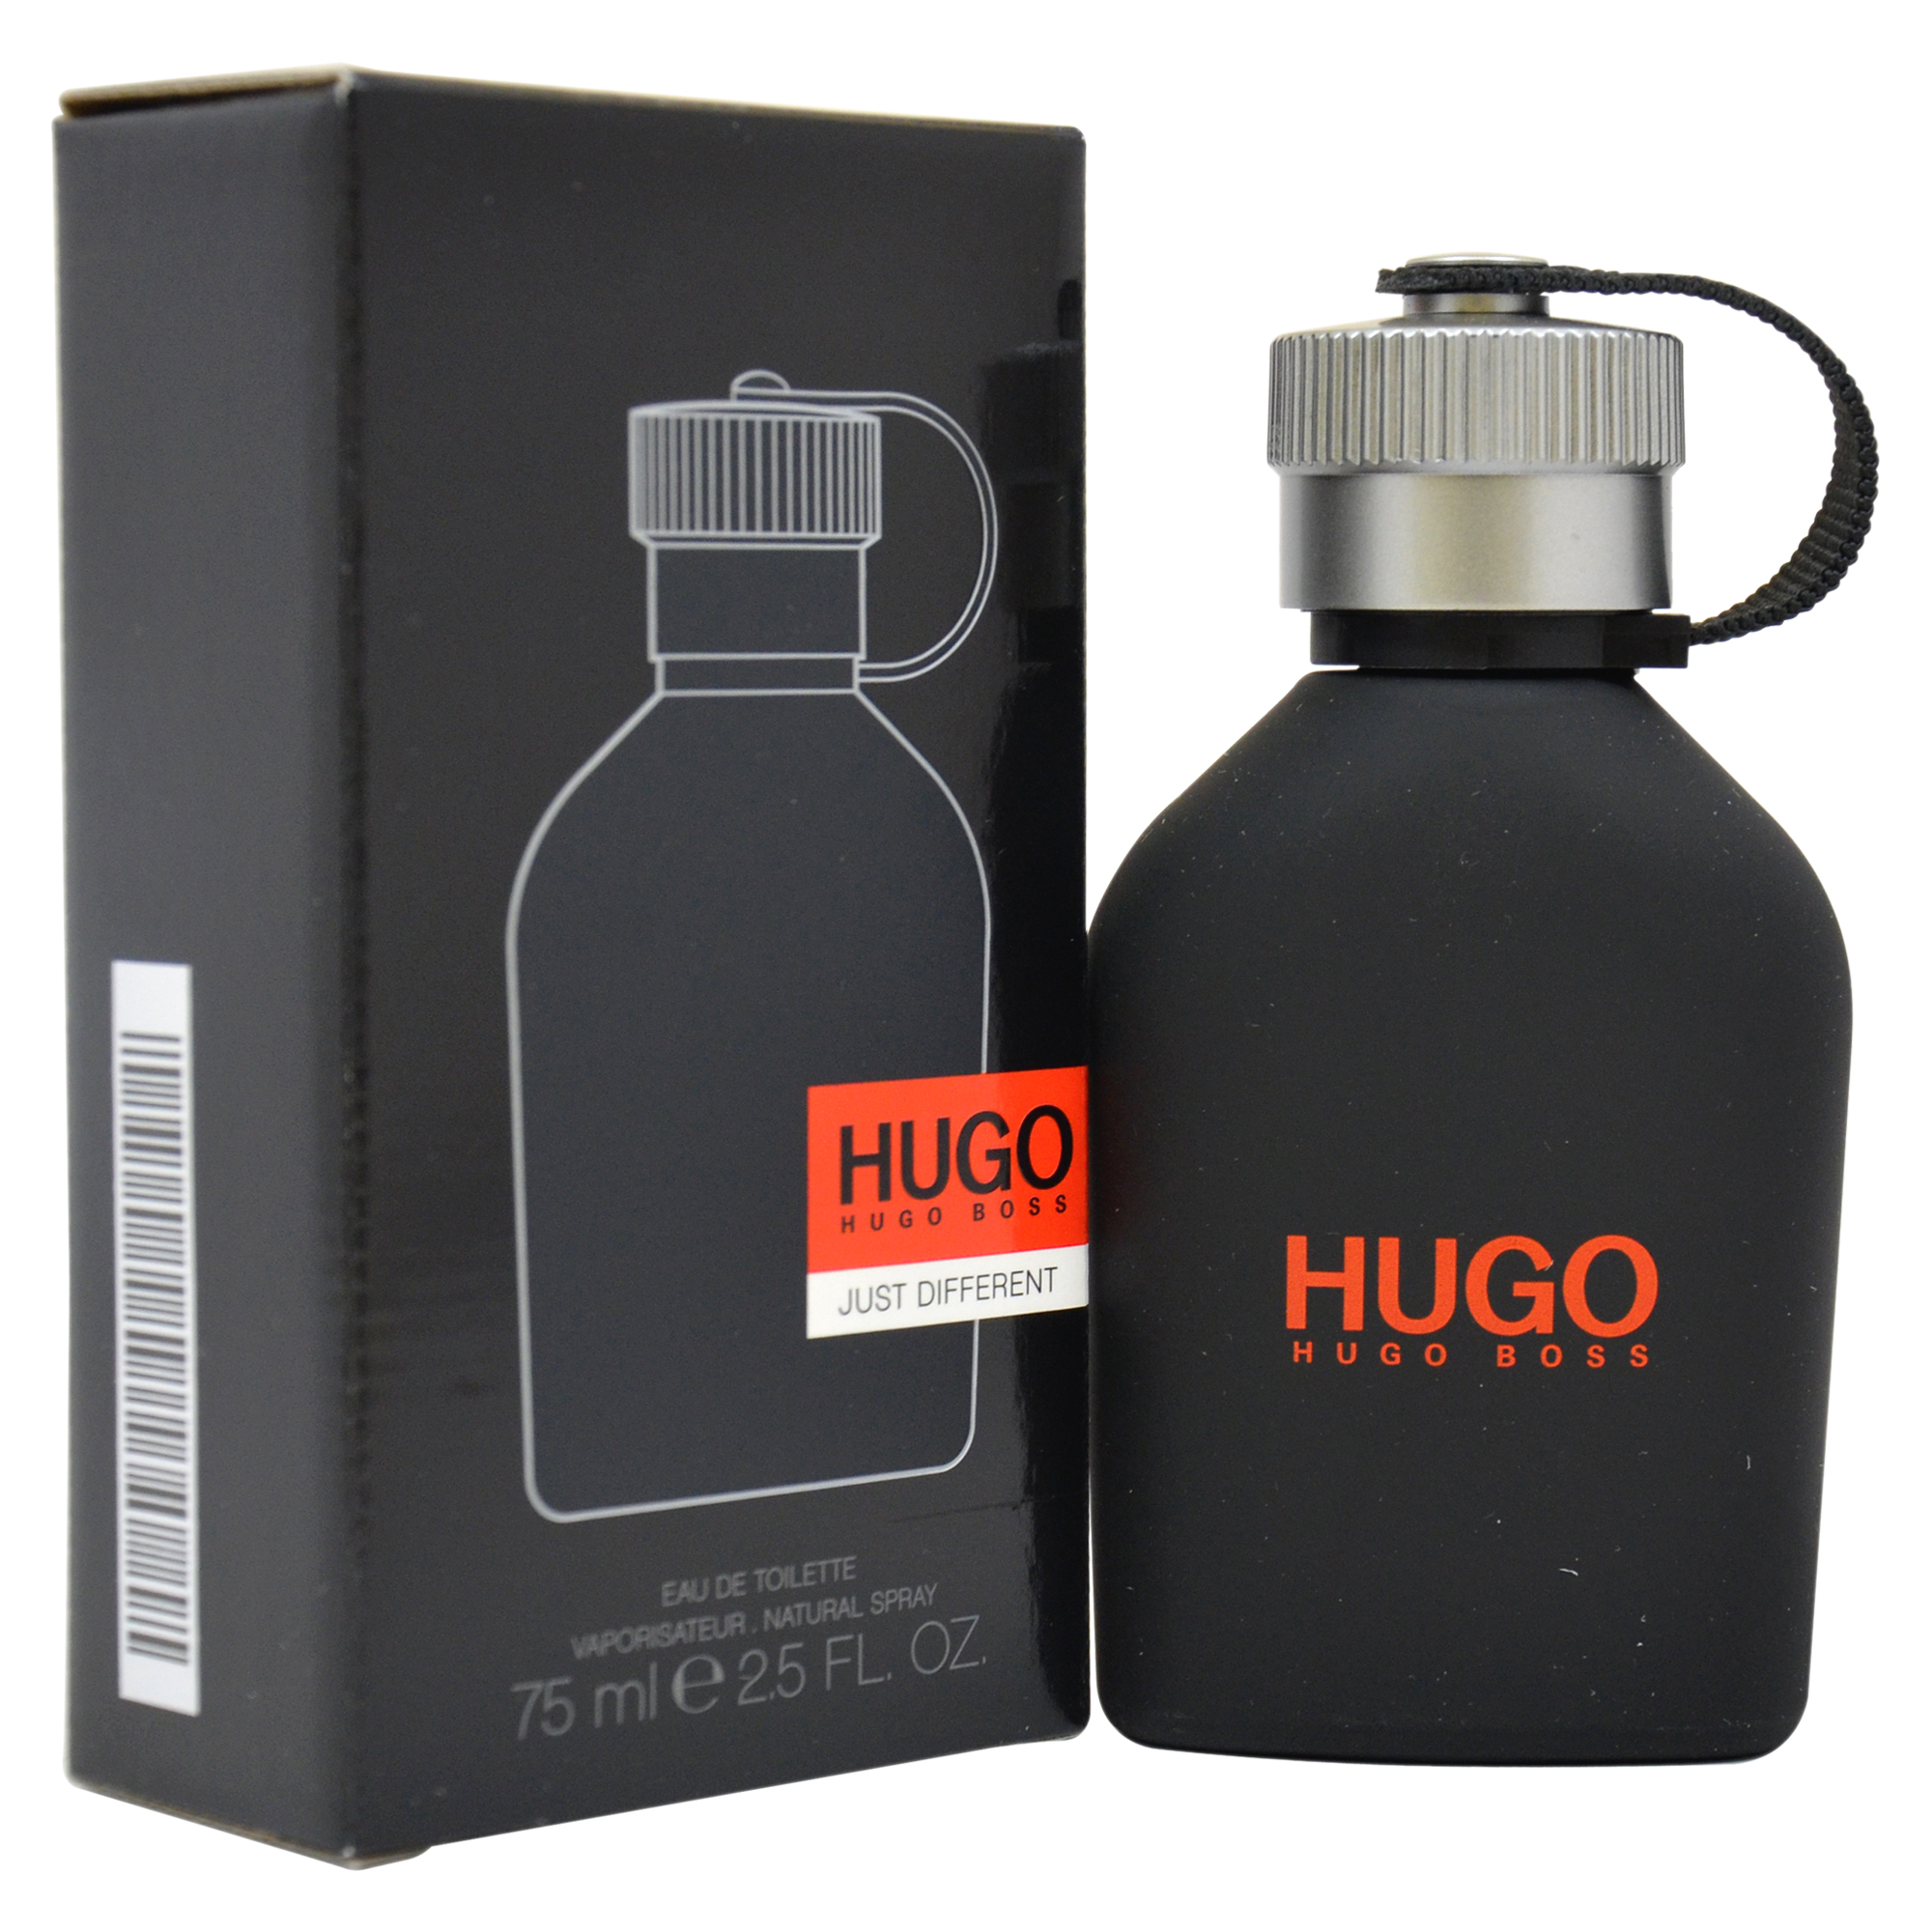 HUGO JUST DIFFERENT by Hugo Boss for Men - 2.5 oz EDT Spray